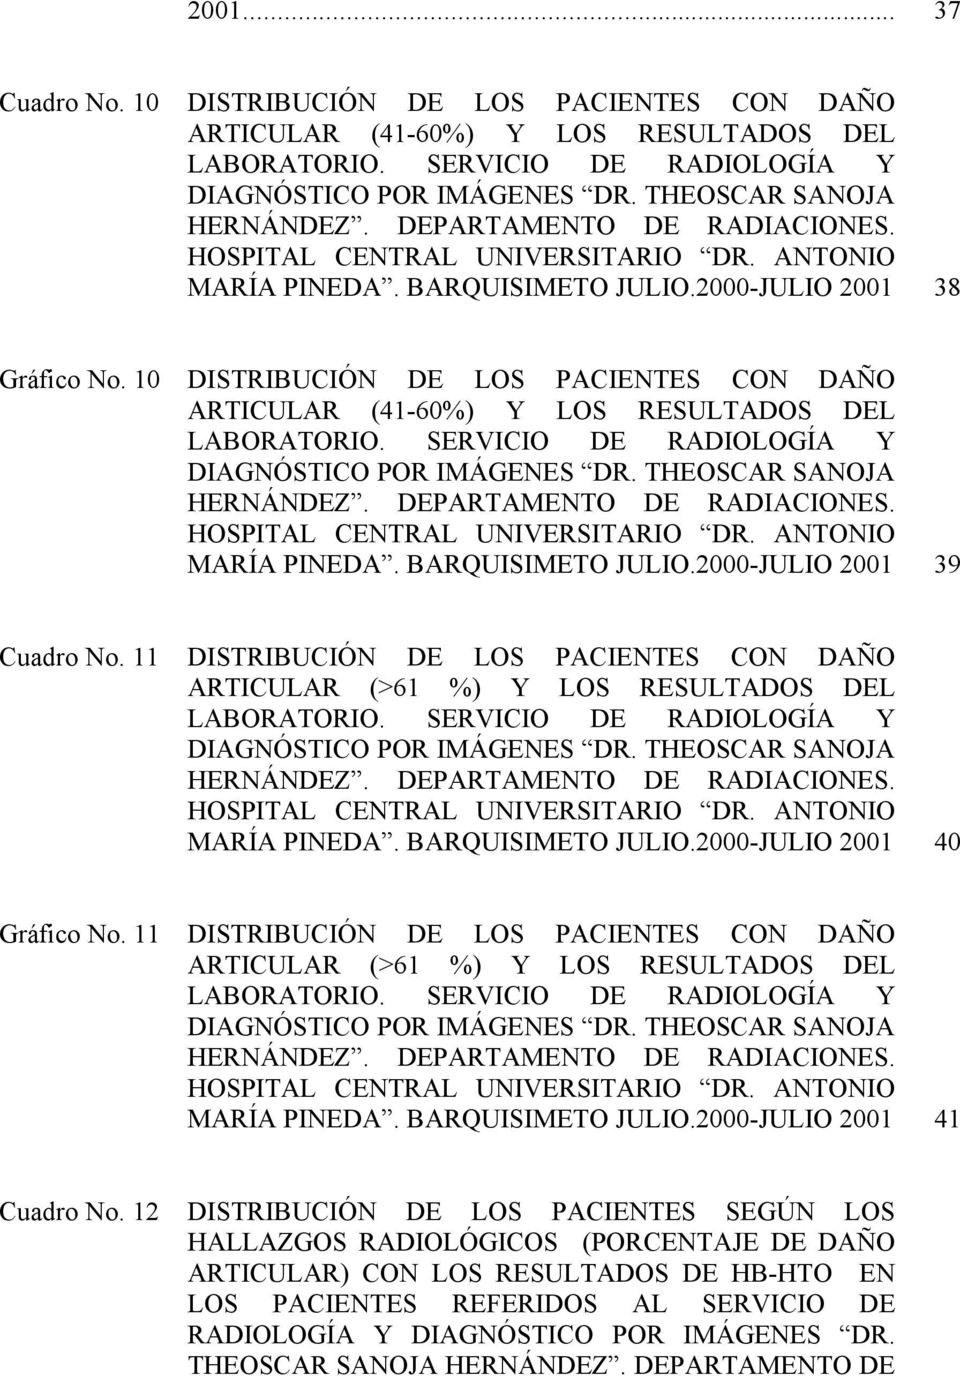 10 DISTRIBUCIÓN DE LOS PACIENTES CON DAÑO ARTICULAR (41-60%) Y LOS RESULTADOS DEL LABORATORIO. SERVICIO DE RADIOLOGÍA Y DIAGNÓSTICO POR IMÁGENES DR. THEOSCAR SANOJA HERNÁNDEZ.